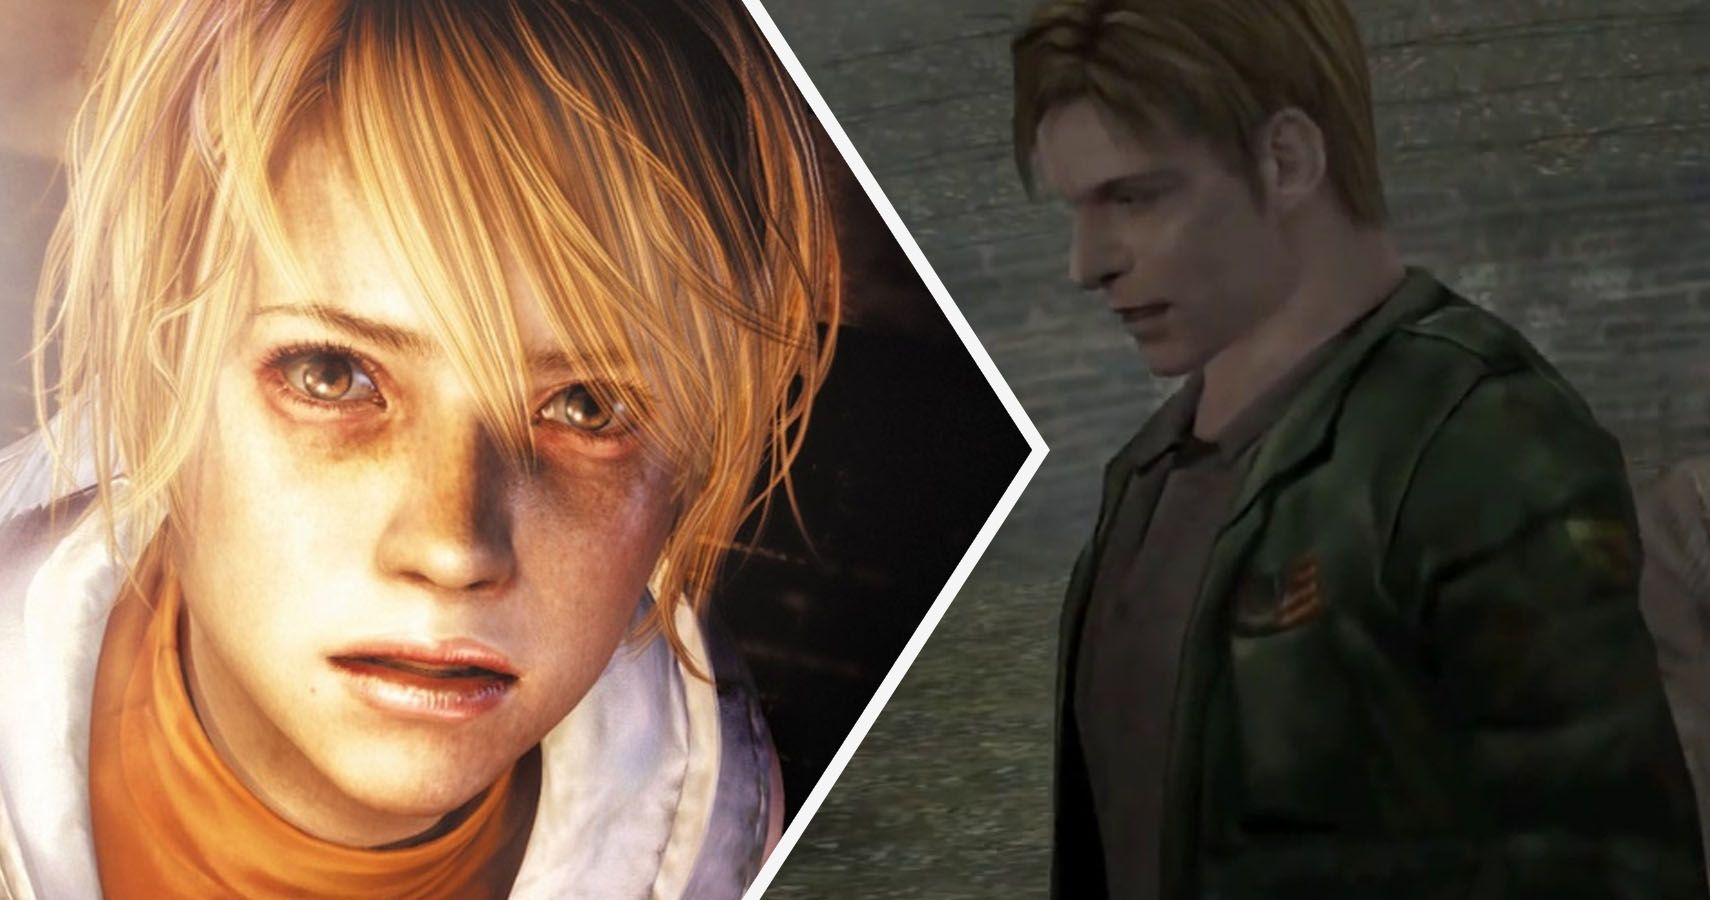 I 10 migliori giochi per PS1, la PlayStation originale tra MGS e Silent Hill